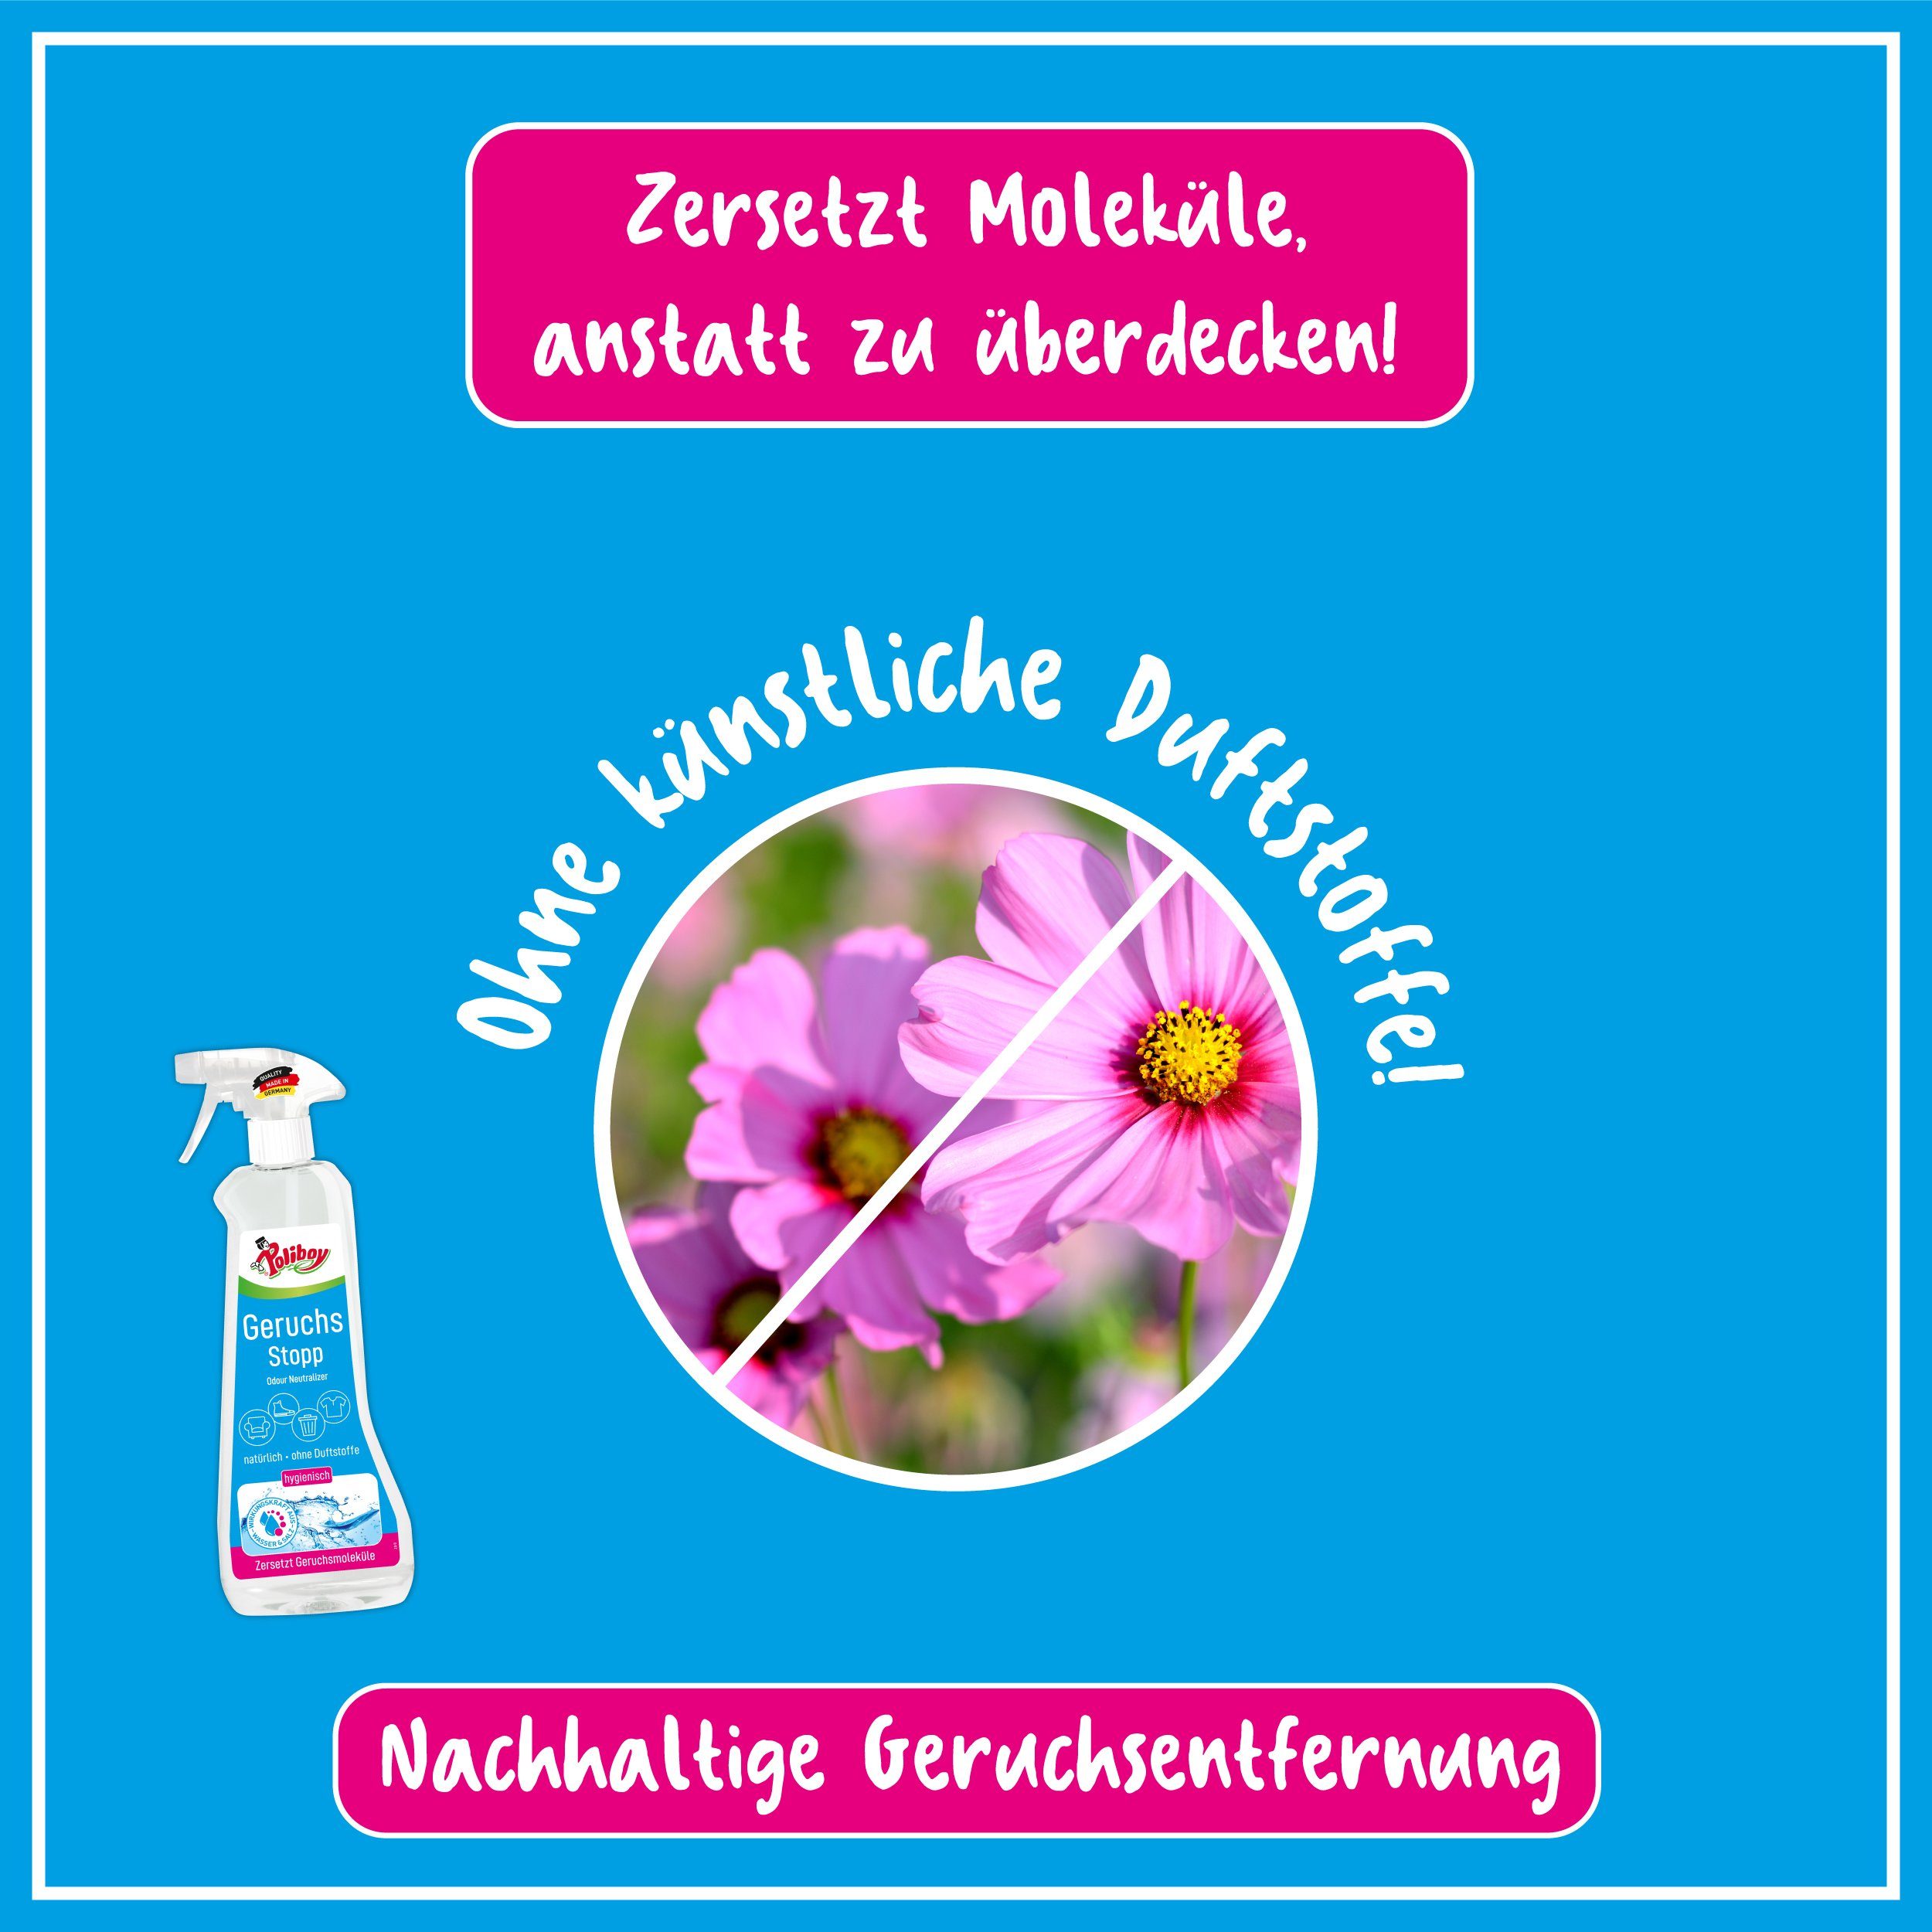 Made - poliboy Germany) in Geruchs Oberflächen Gerüche Stopp (verbannt 10x500ml - Aktiv von Reinigungsspray schlechte